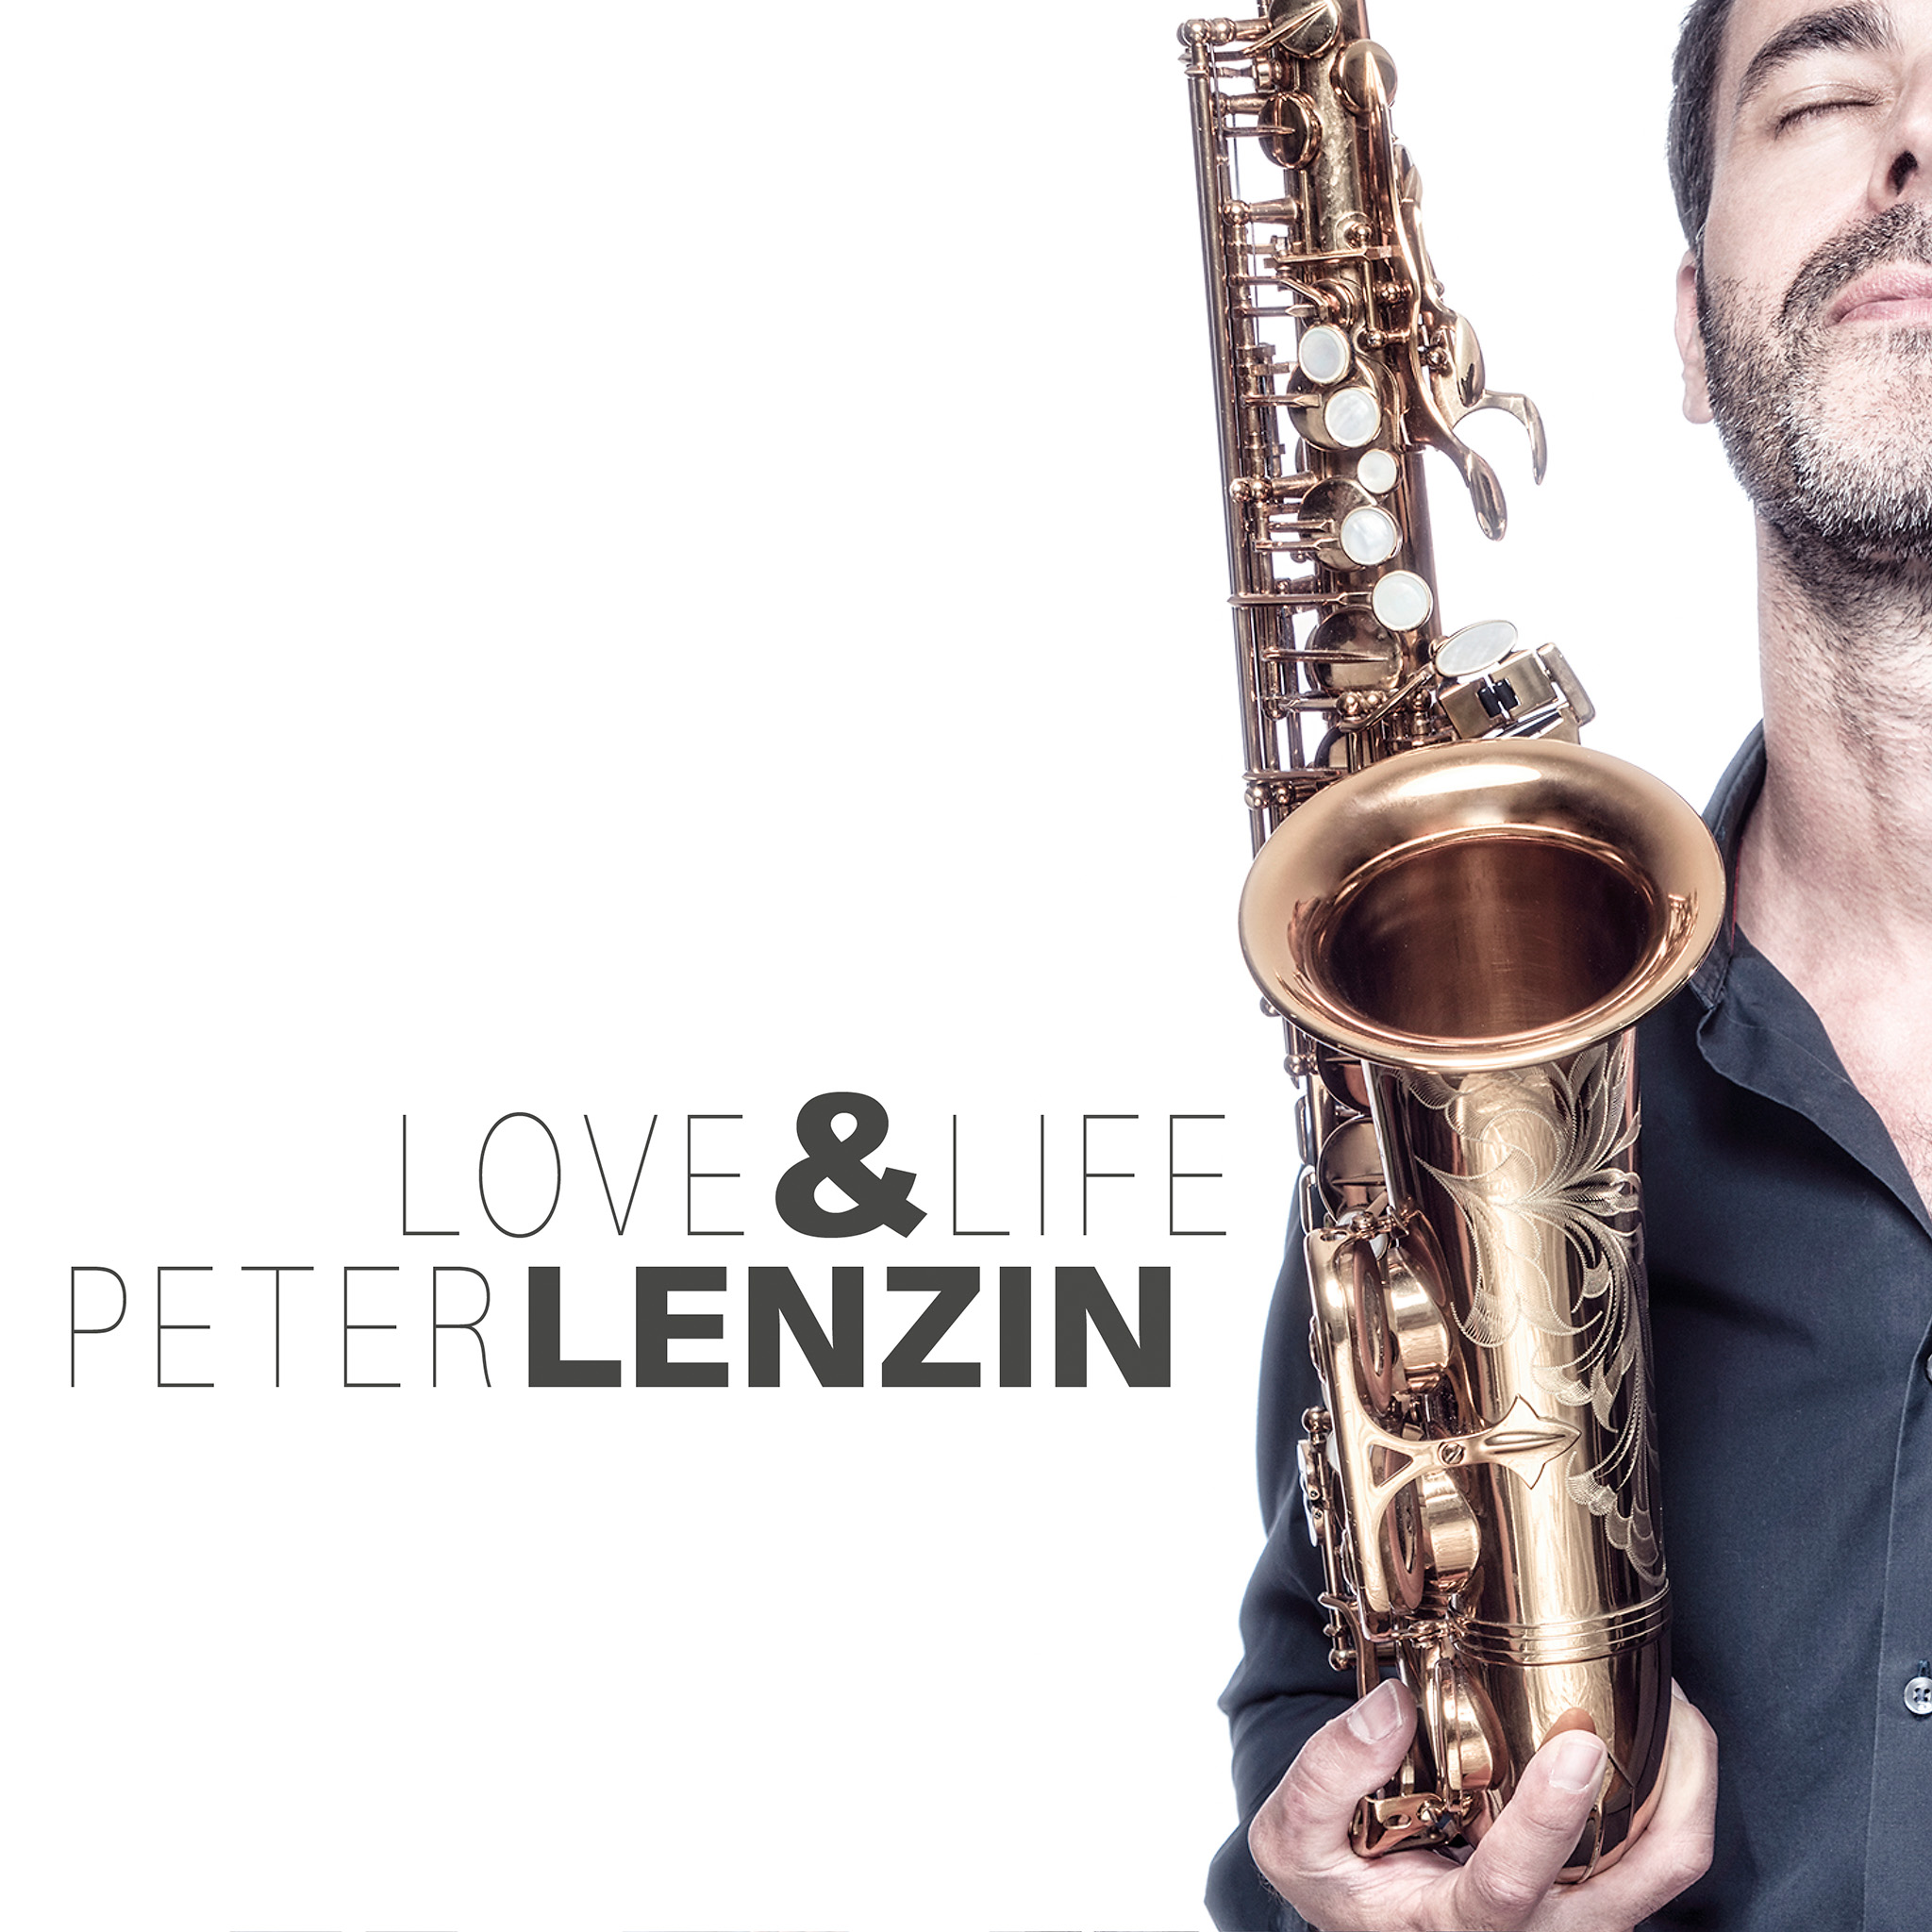 LOVE & LIFE - Peter Lenzin